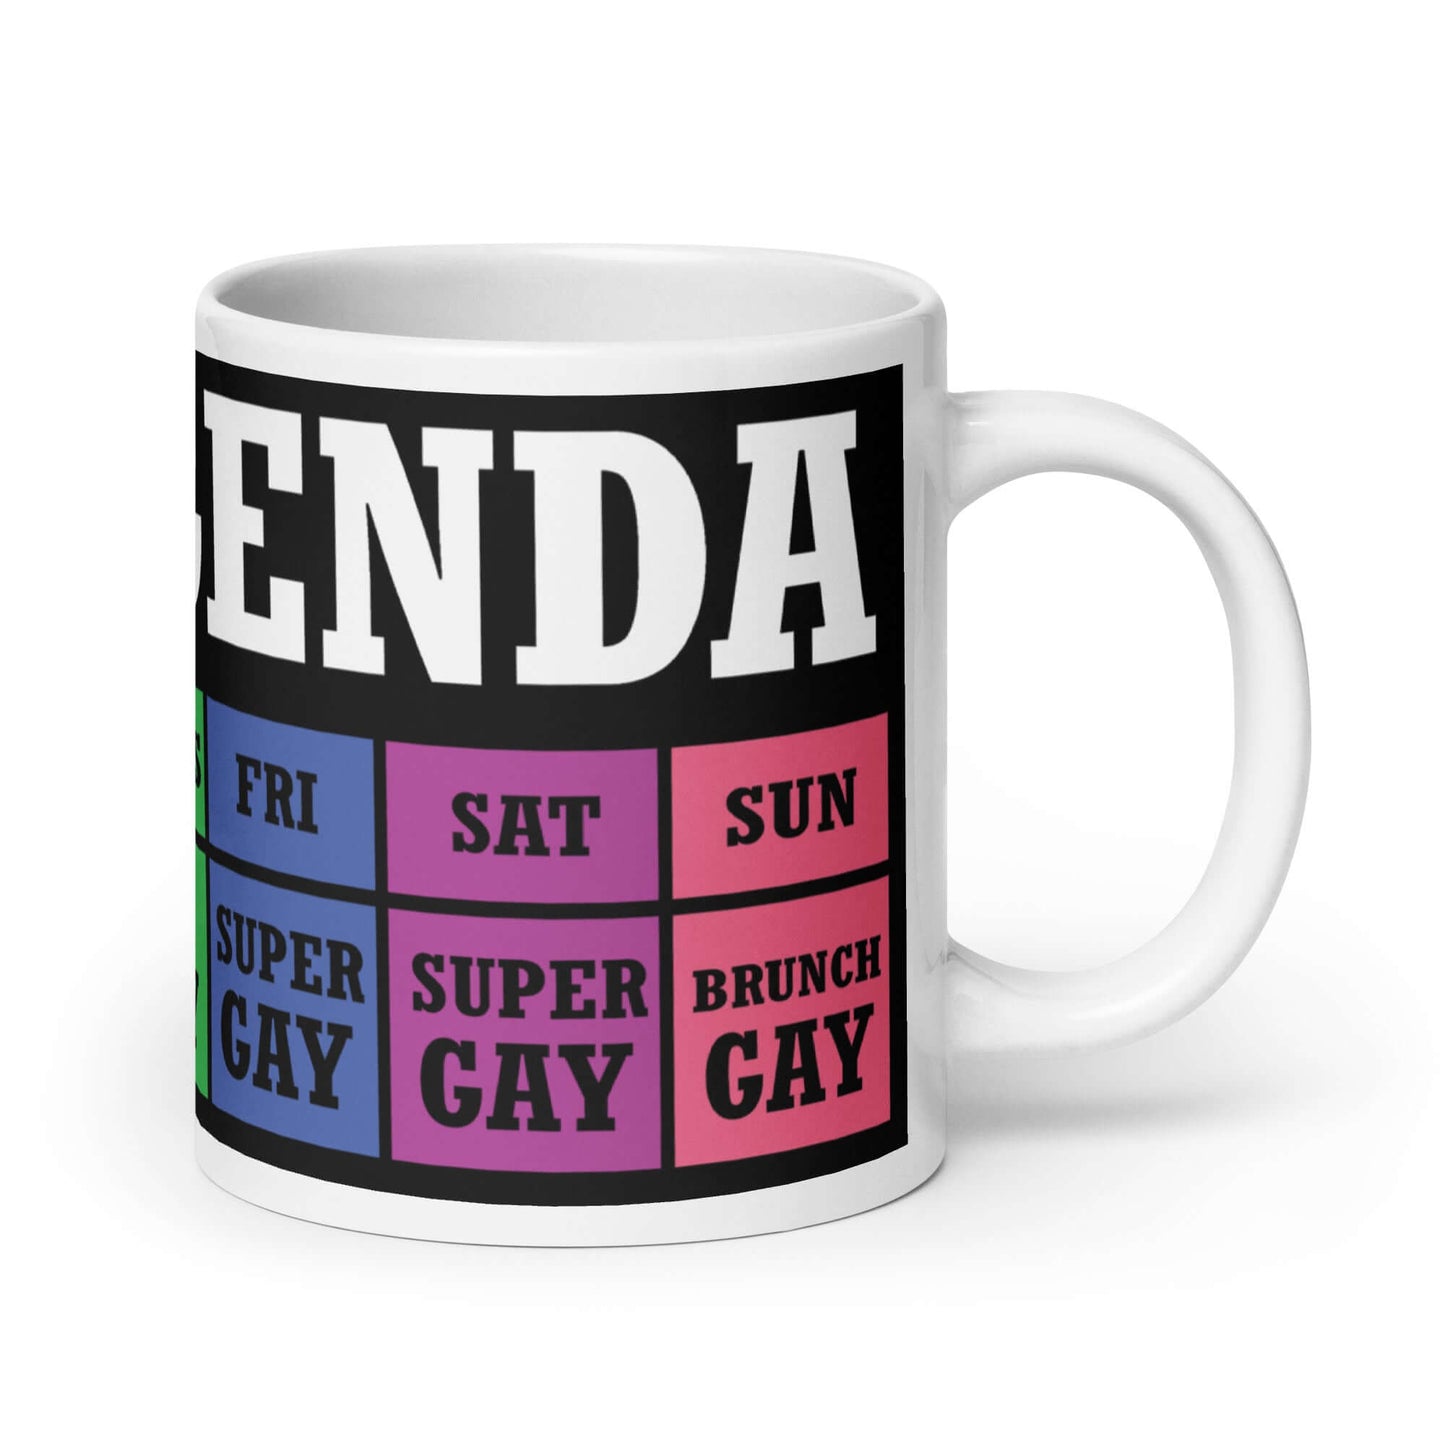 Gay agenda mug